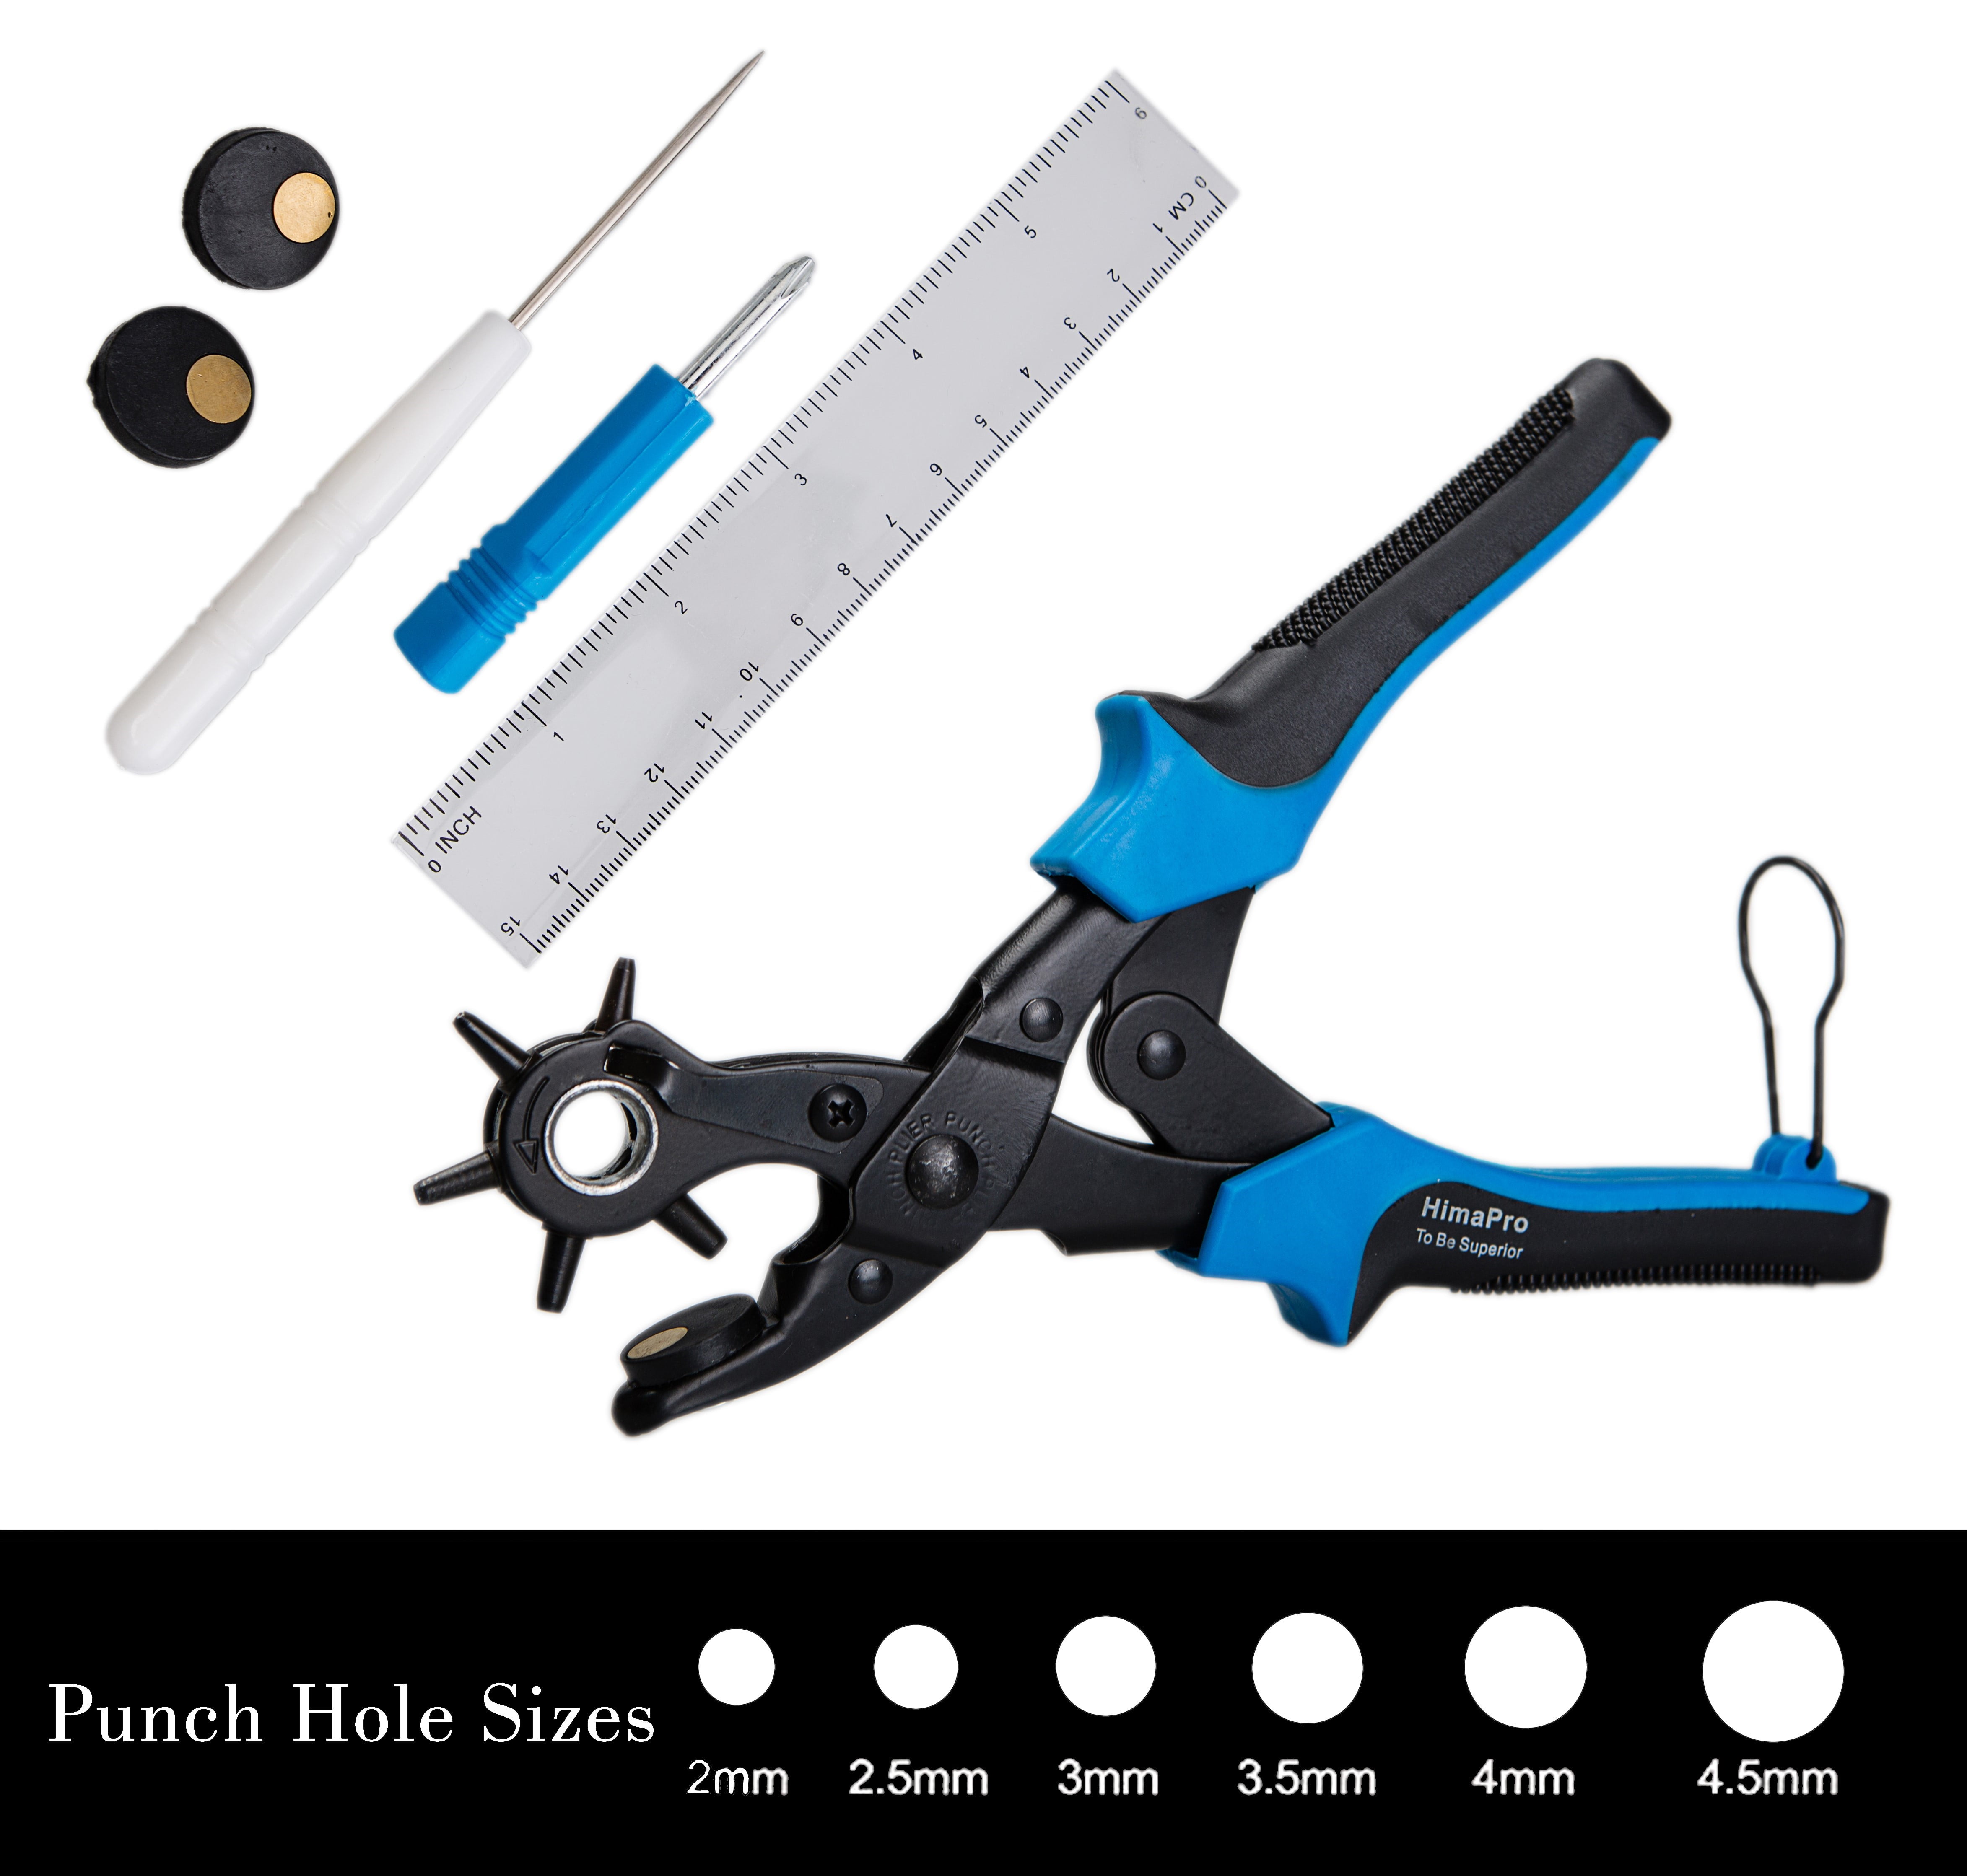 UNCO- Leather Hole Punch Tool, Multi Hole Sizes, Belt Hole Puncher, Leather  Punch Tool, Leather Hole Punch for Belts, Leather Hole Puncher